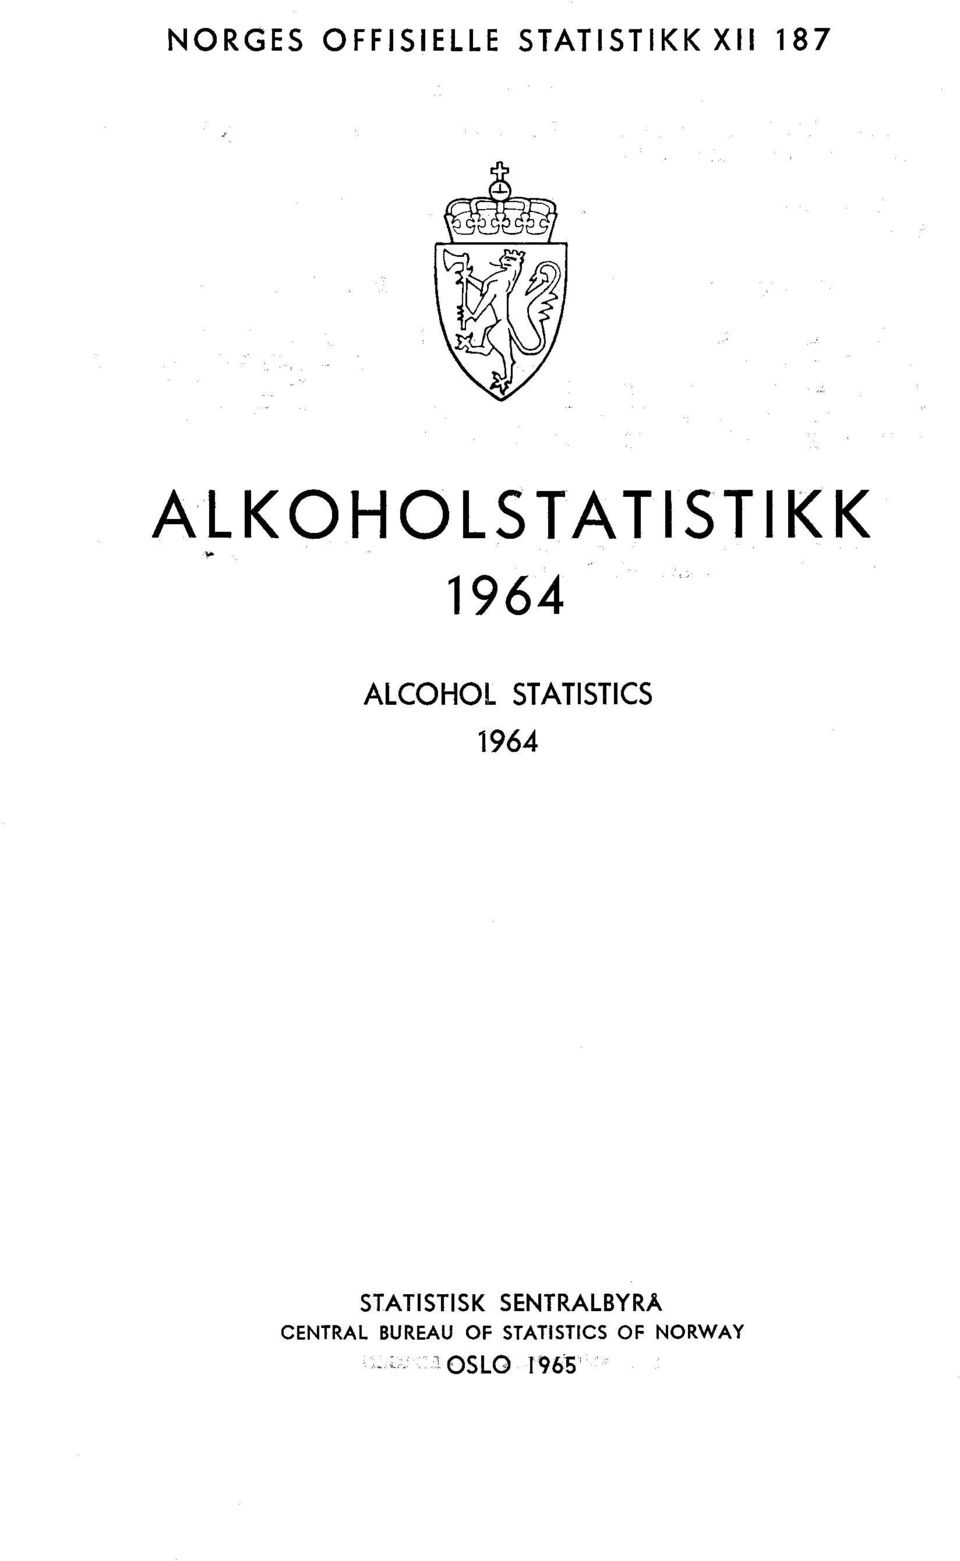 STATISTICS 1964 STATISTISK SENTRALBYRÅ